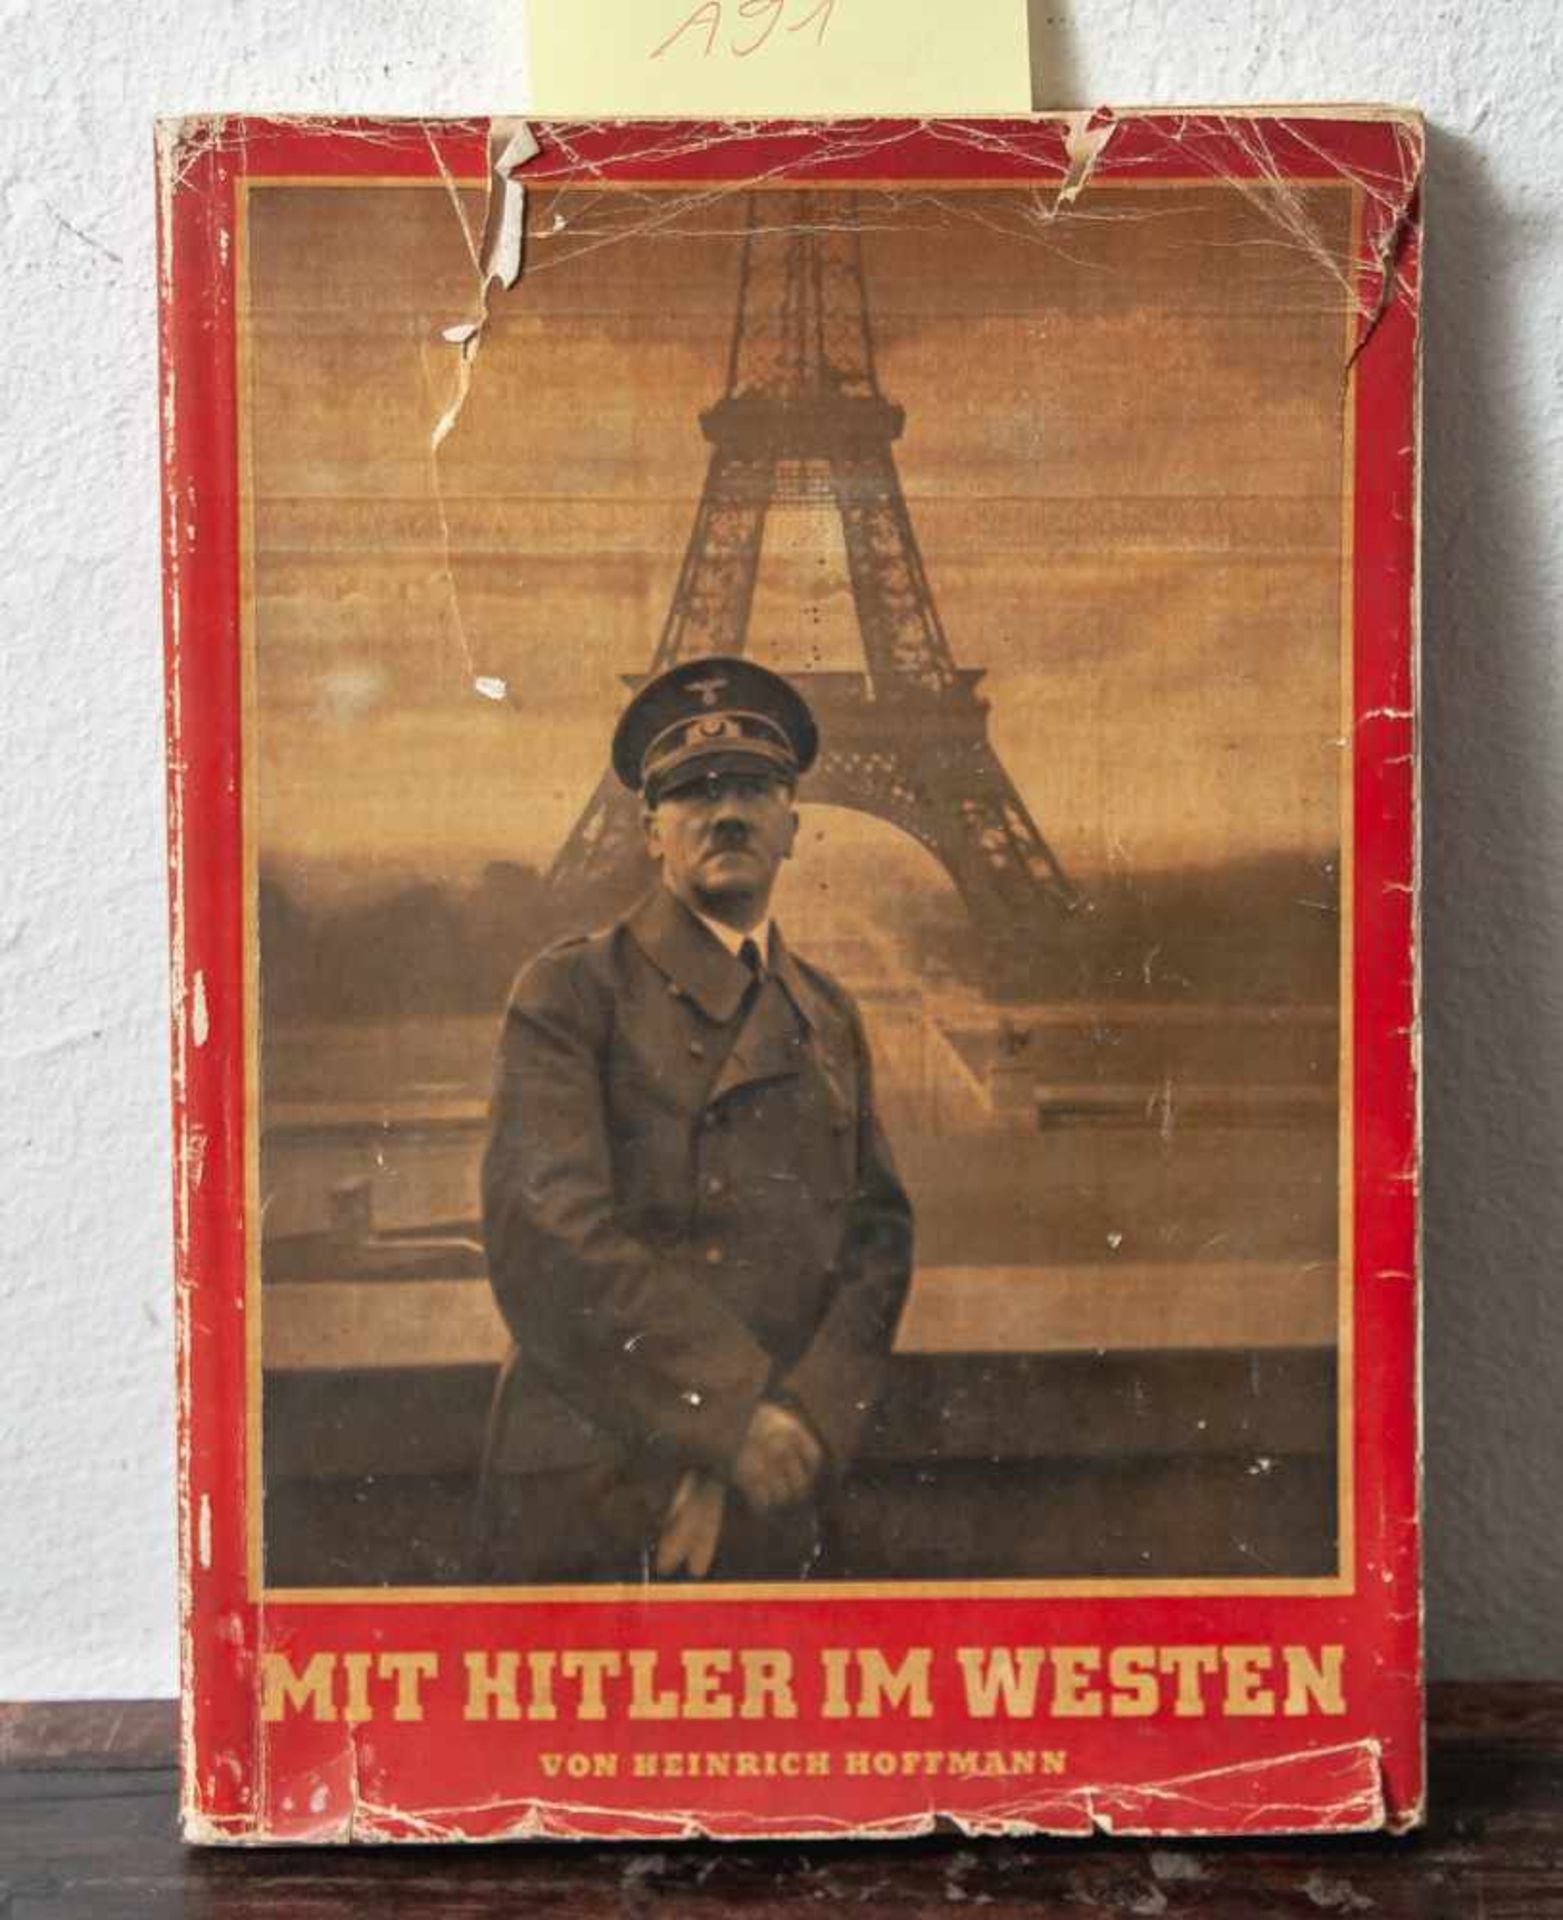 Hoffmann, Prof. Heinrich (Hrsg.), Mit Hitler im Westen, Zeitgeschichte-Verlag, Berlin, 1940,